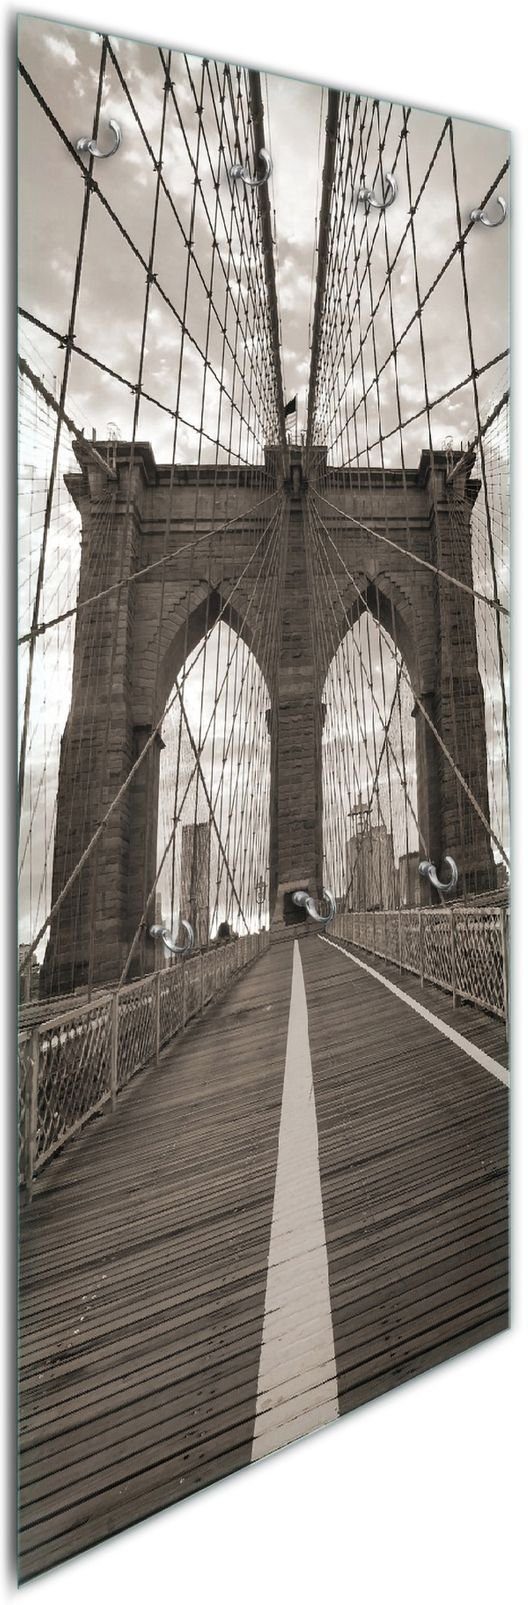 Wallario Wandgarderobe Brooklyn Bridge in New York (1-teilig, inkl. Haken und Befestigungsset), 50x125cm, aus ESG-Sicherheitsglas